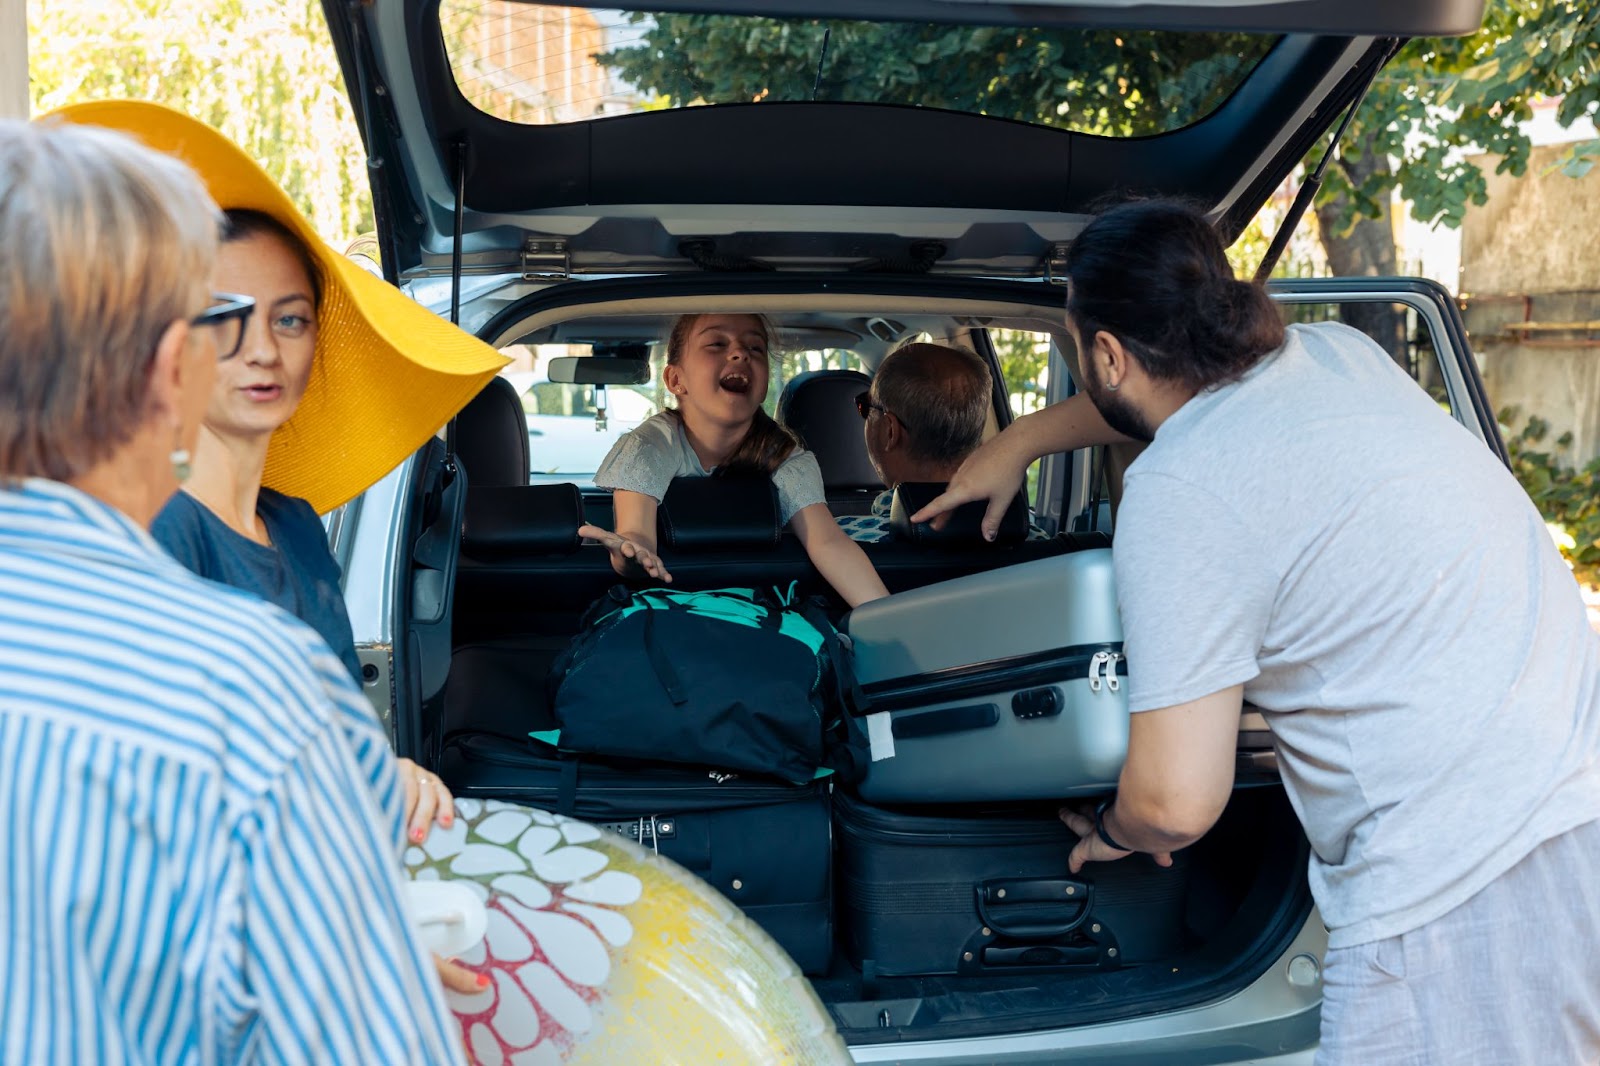 Imagem de uma família se preparando para viajar. A fotografia é tirada de frente para um porta-malas aberto, com diversas malas sendo posicionadas dentro do veículo. É possível ver 5 pessoas, sendo uma delas uma criança no banco de trás.